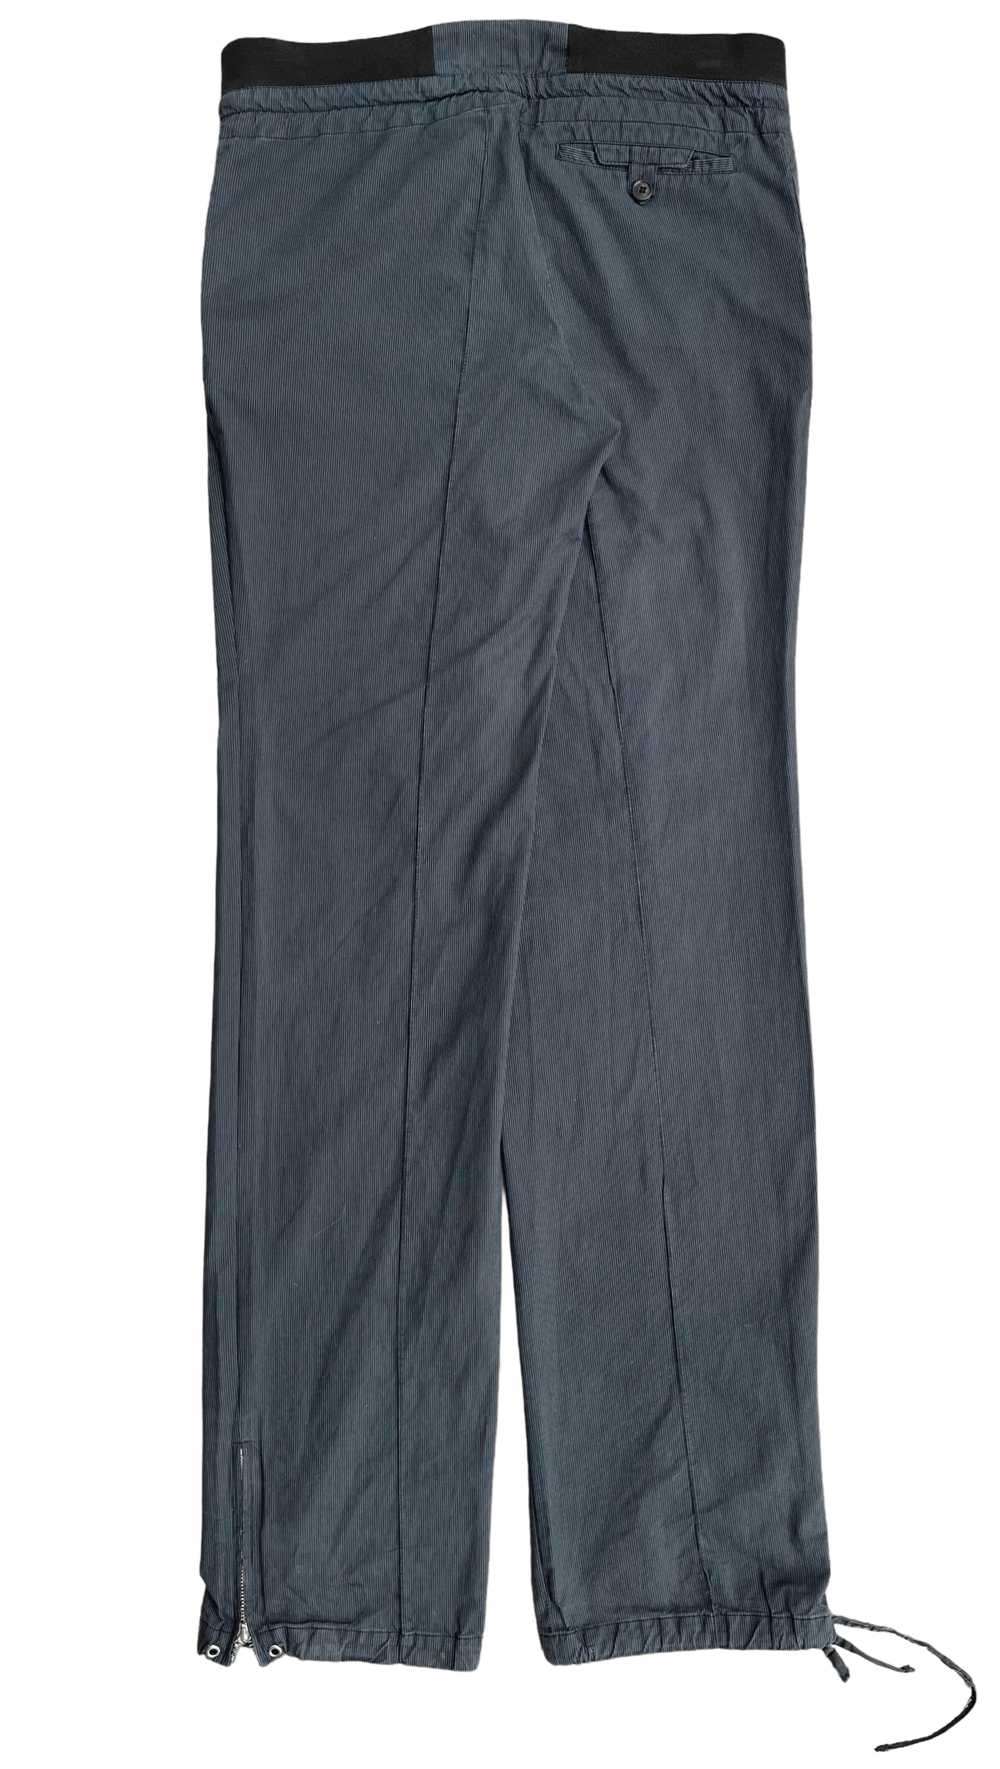 Kris Van Assche Pleated Zipper Trousers - image 5